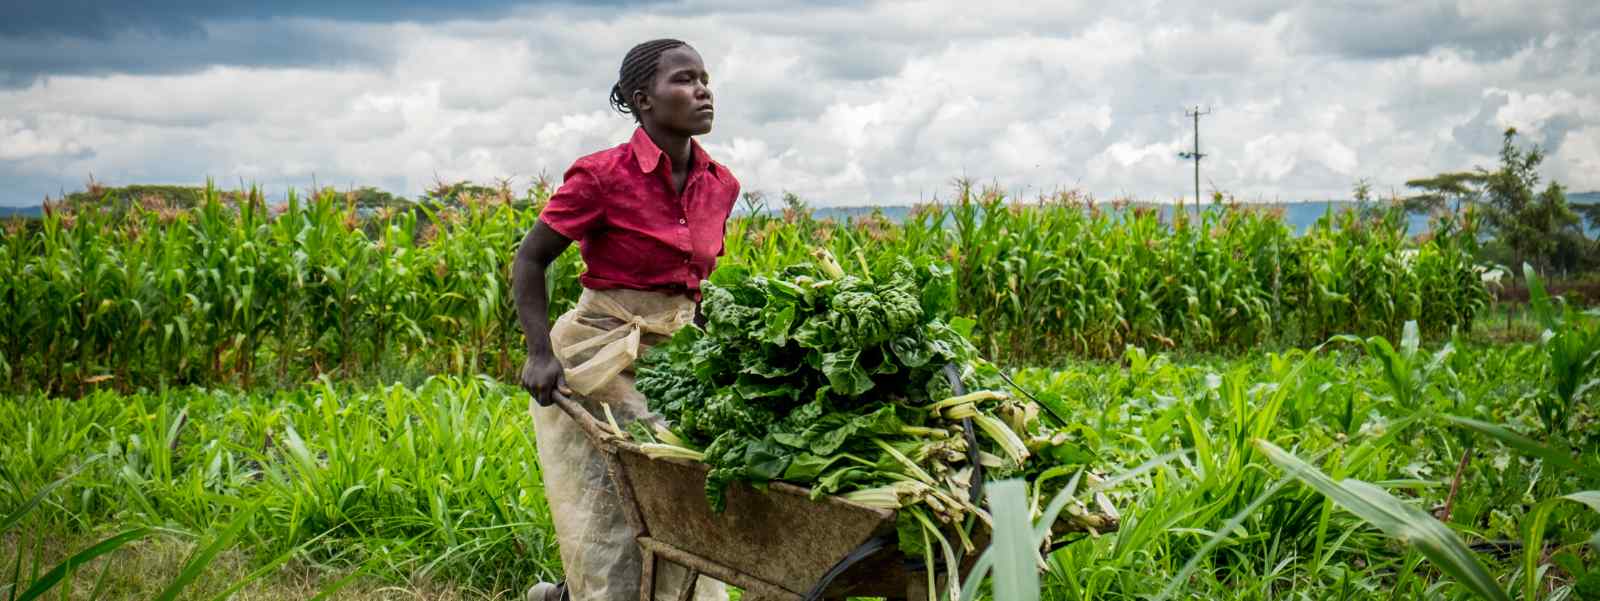 A Kenyan farm worker in the field